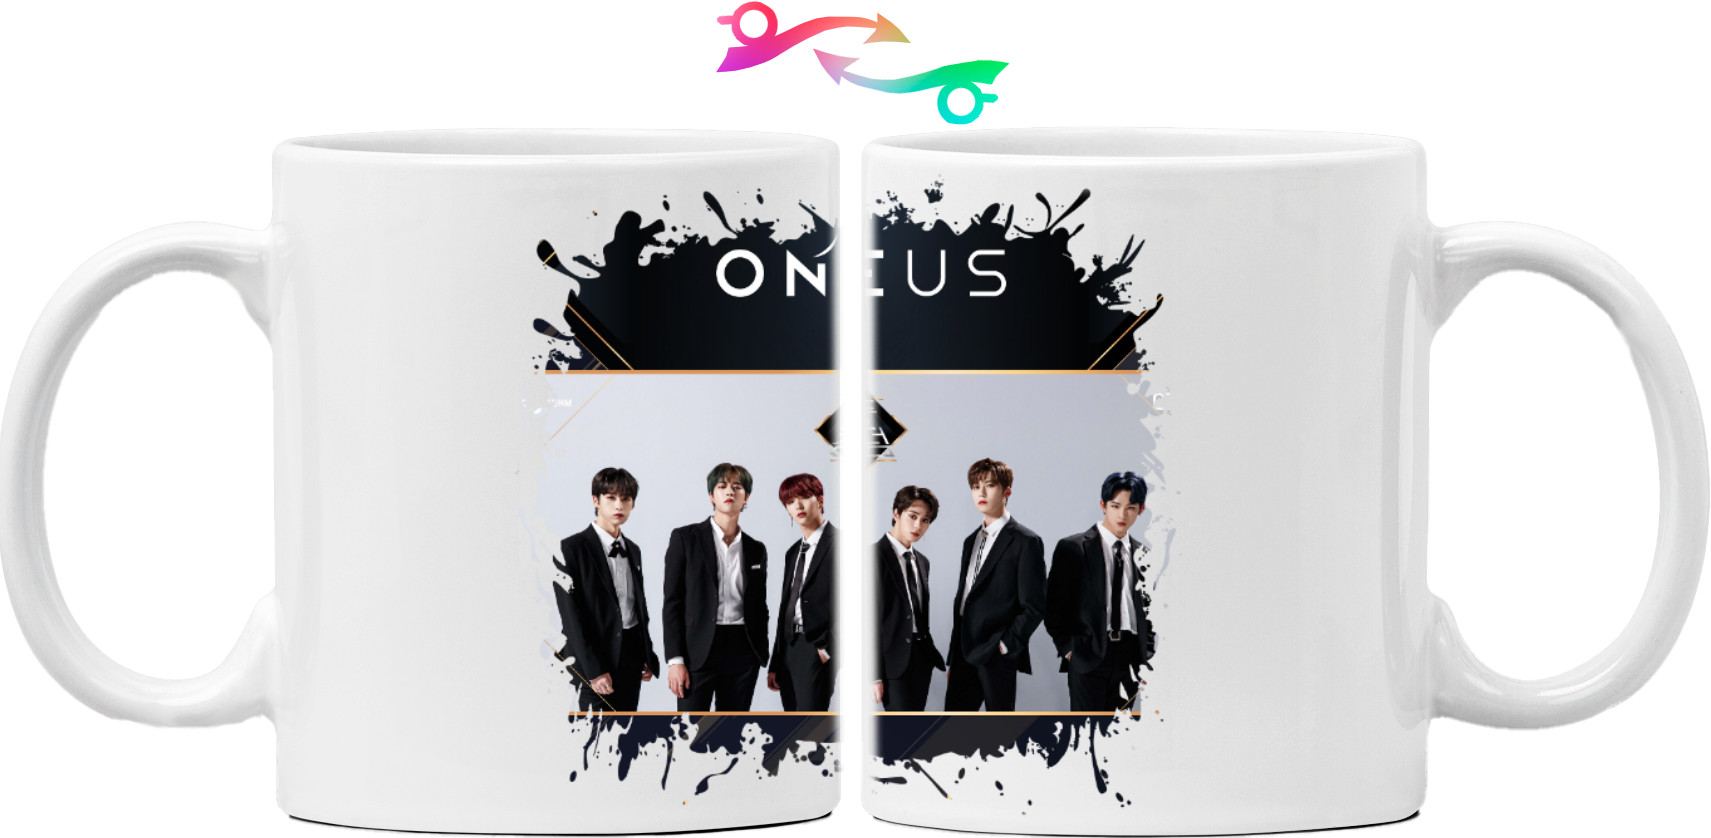 Oneus - Mug - Oneus 2 - Mfest